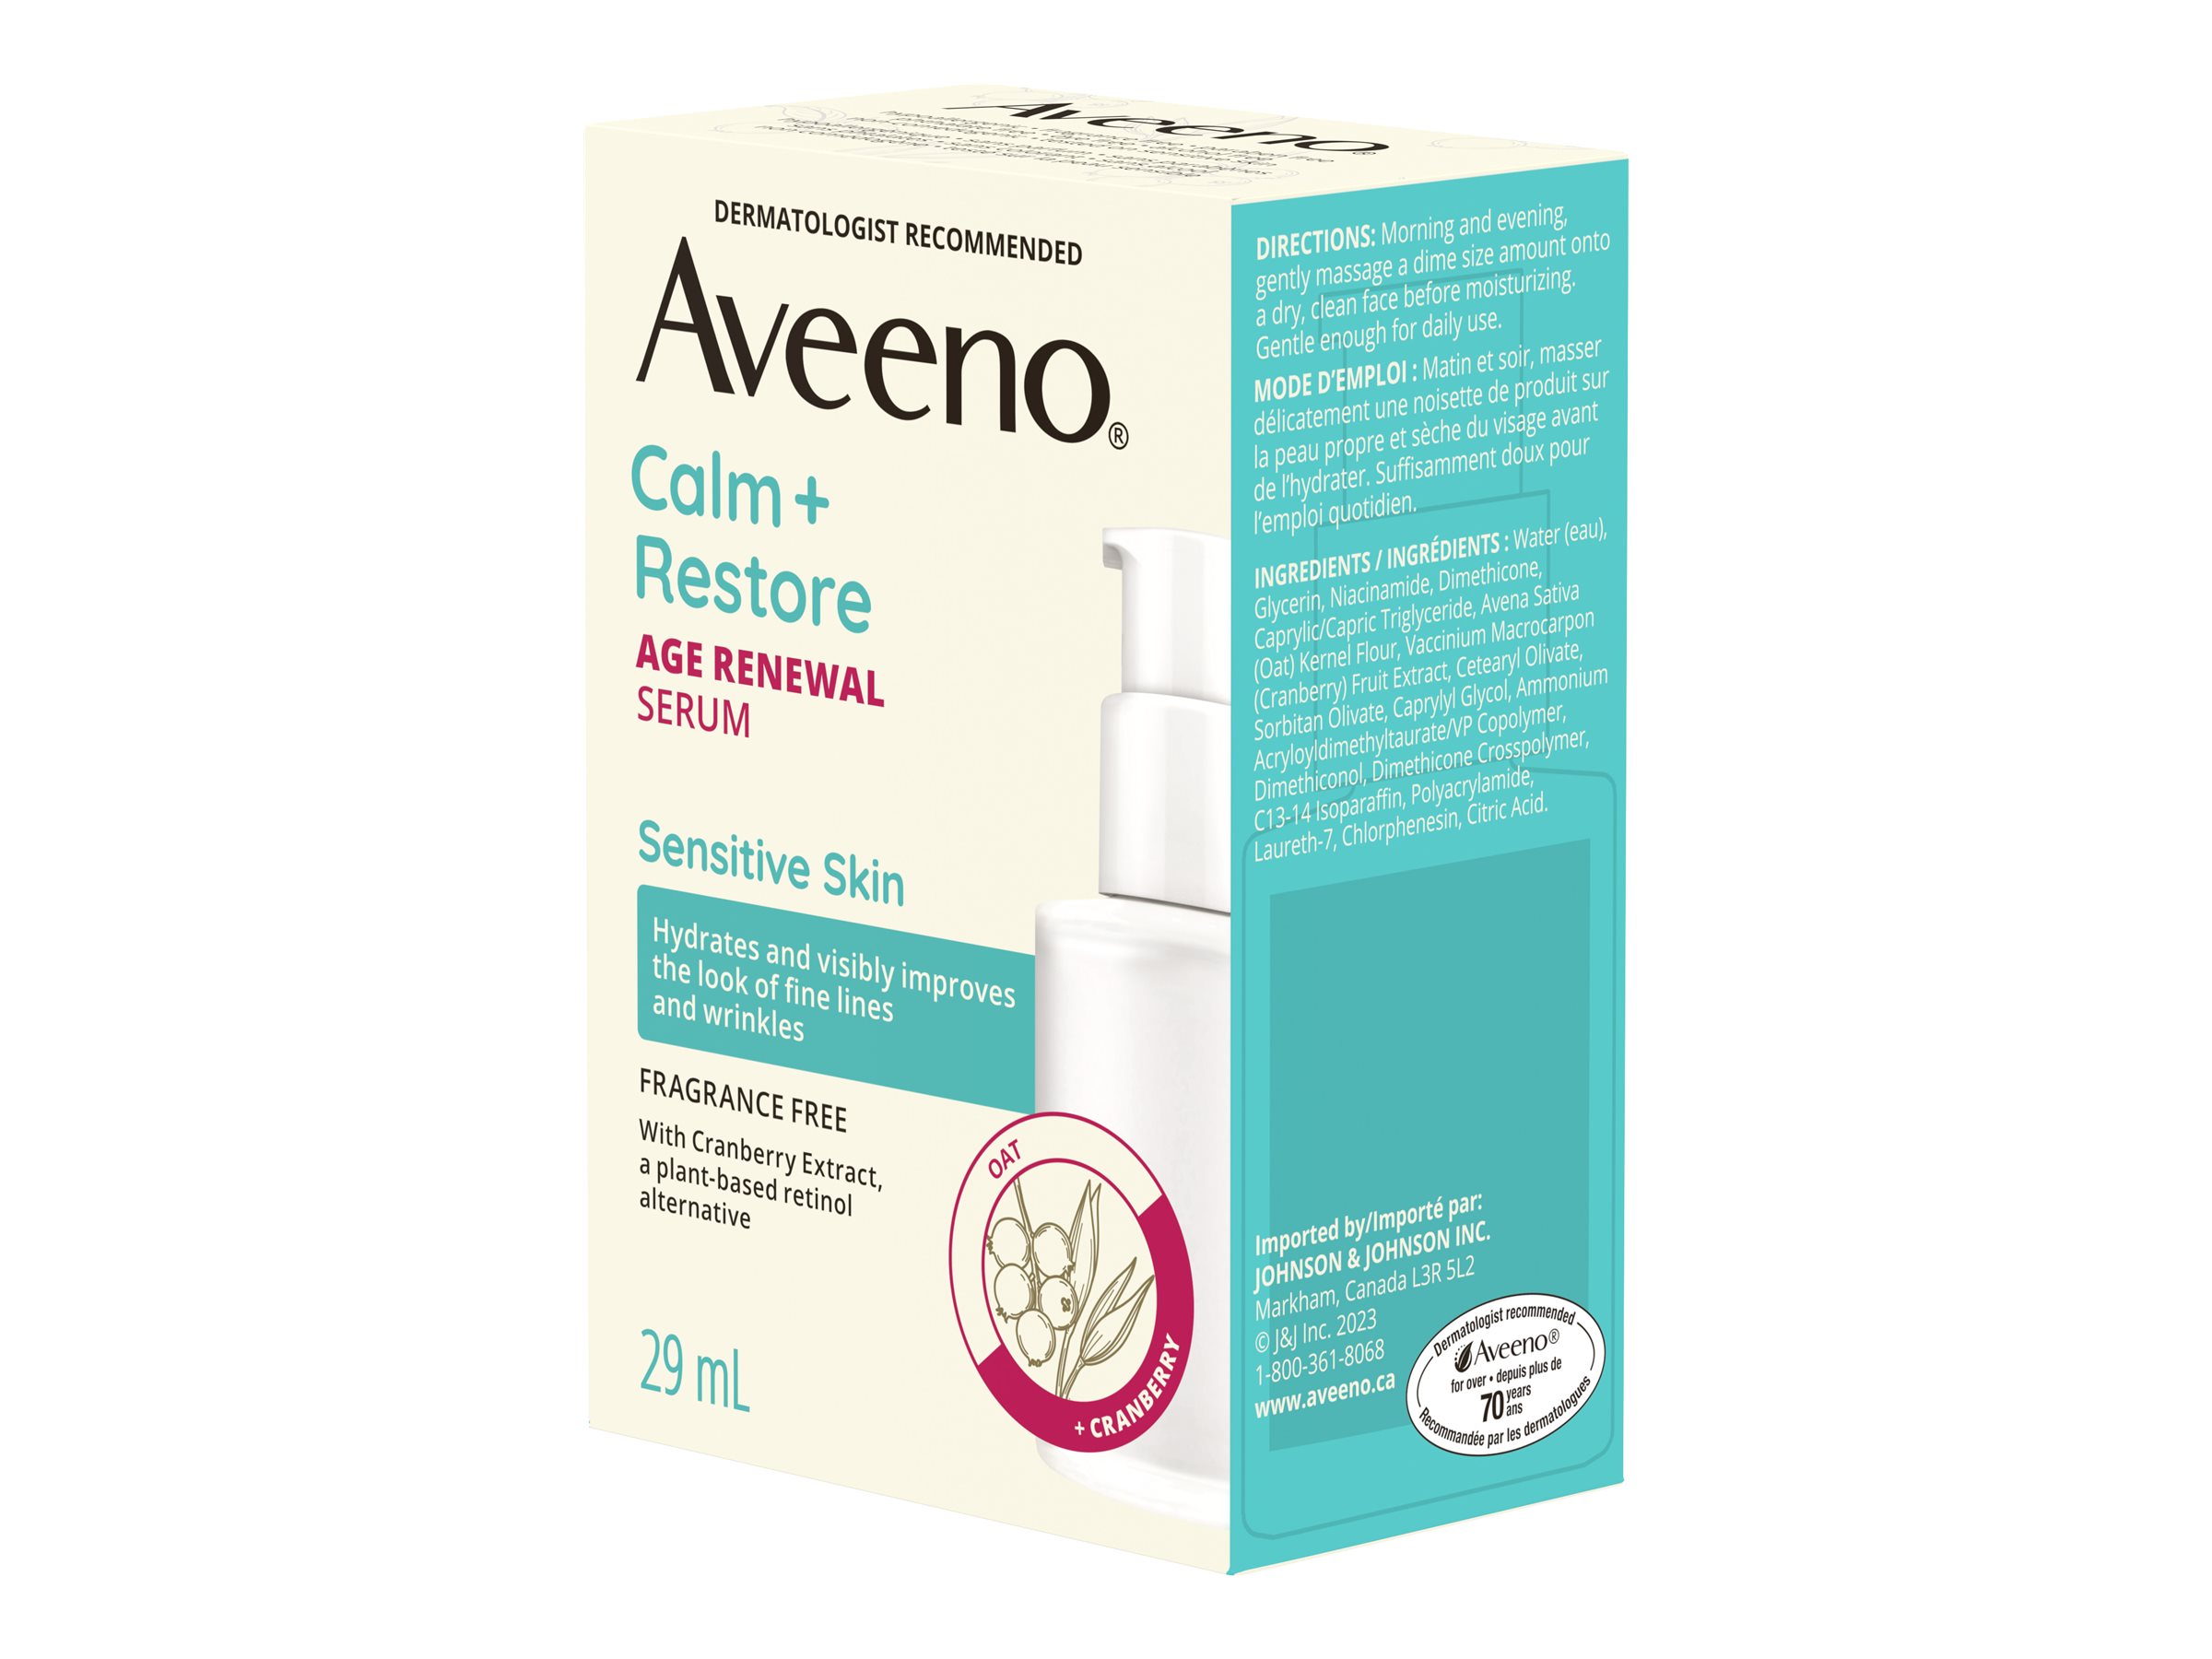 Aveeno Calm + Restore Age Renewal Serum - 29ml